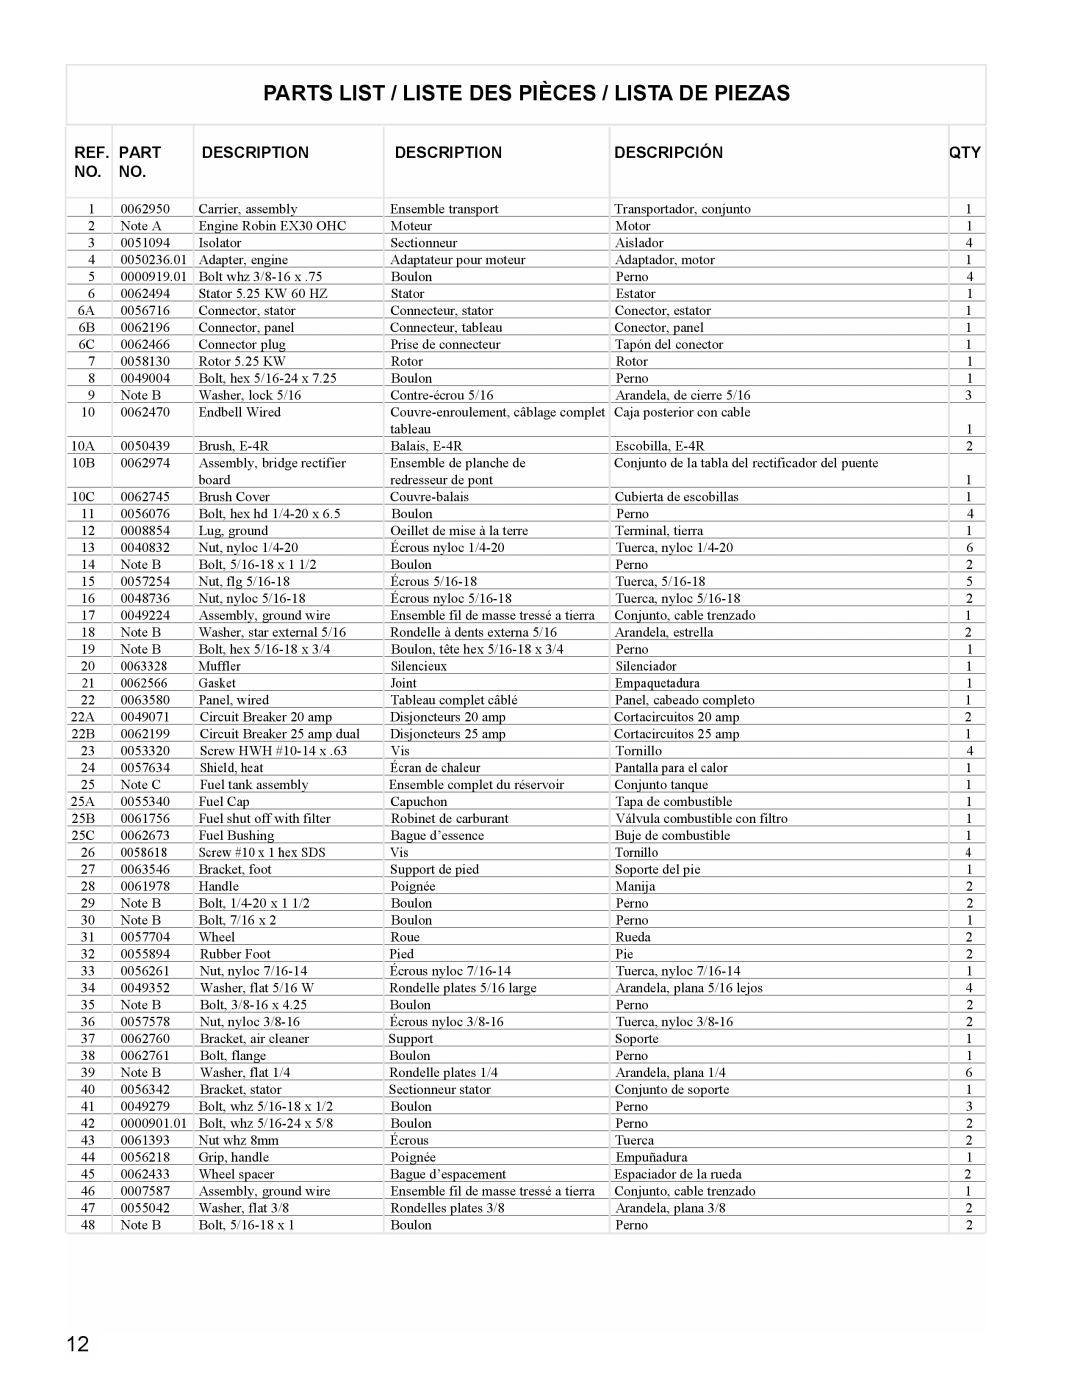 Powermate PMC435250 manual Parts List / Liste Des Pièces / Lista De Piezas, Description, Descripción 